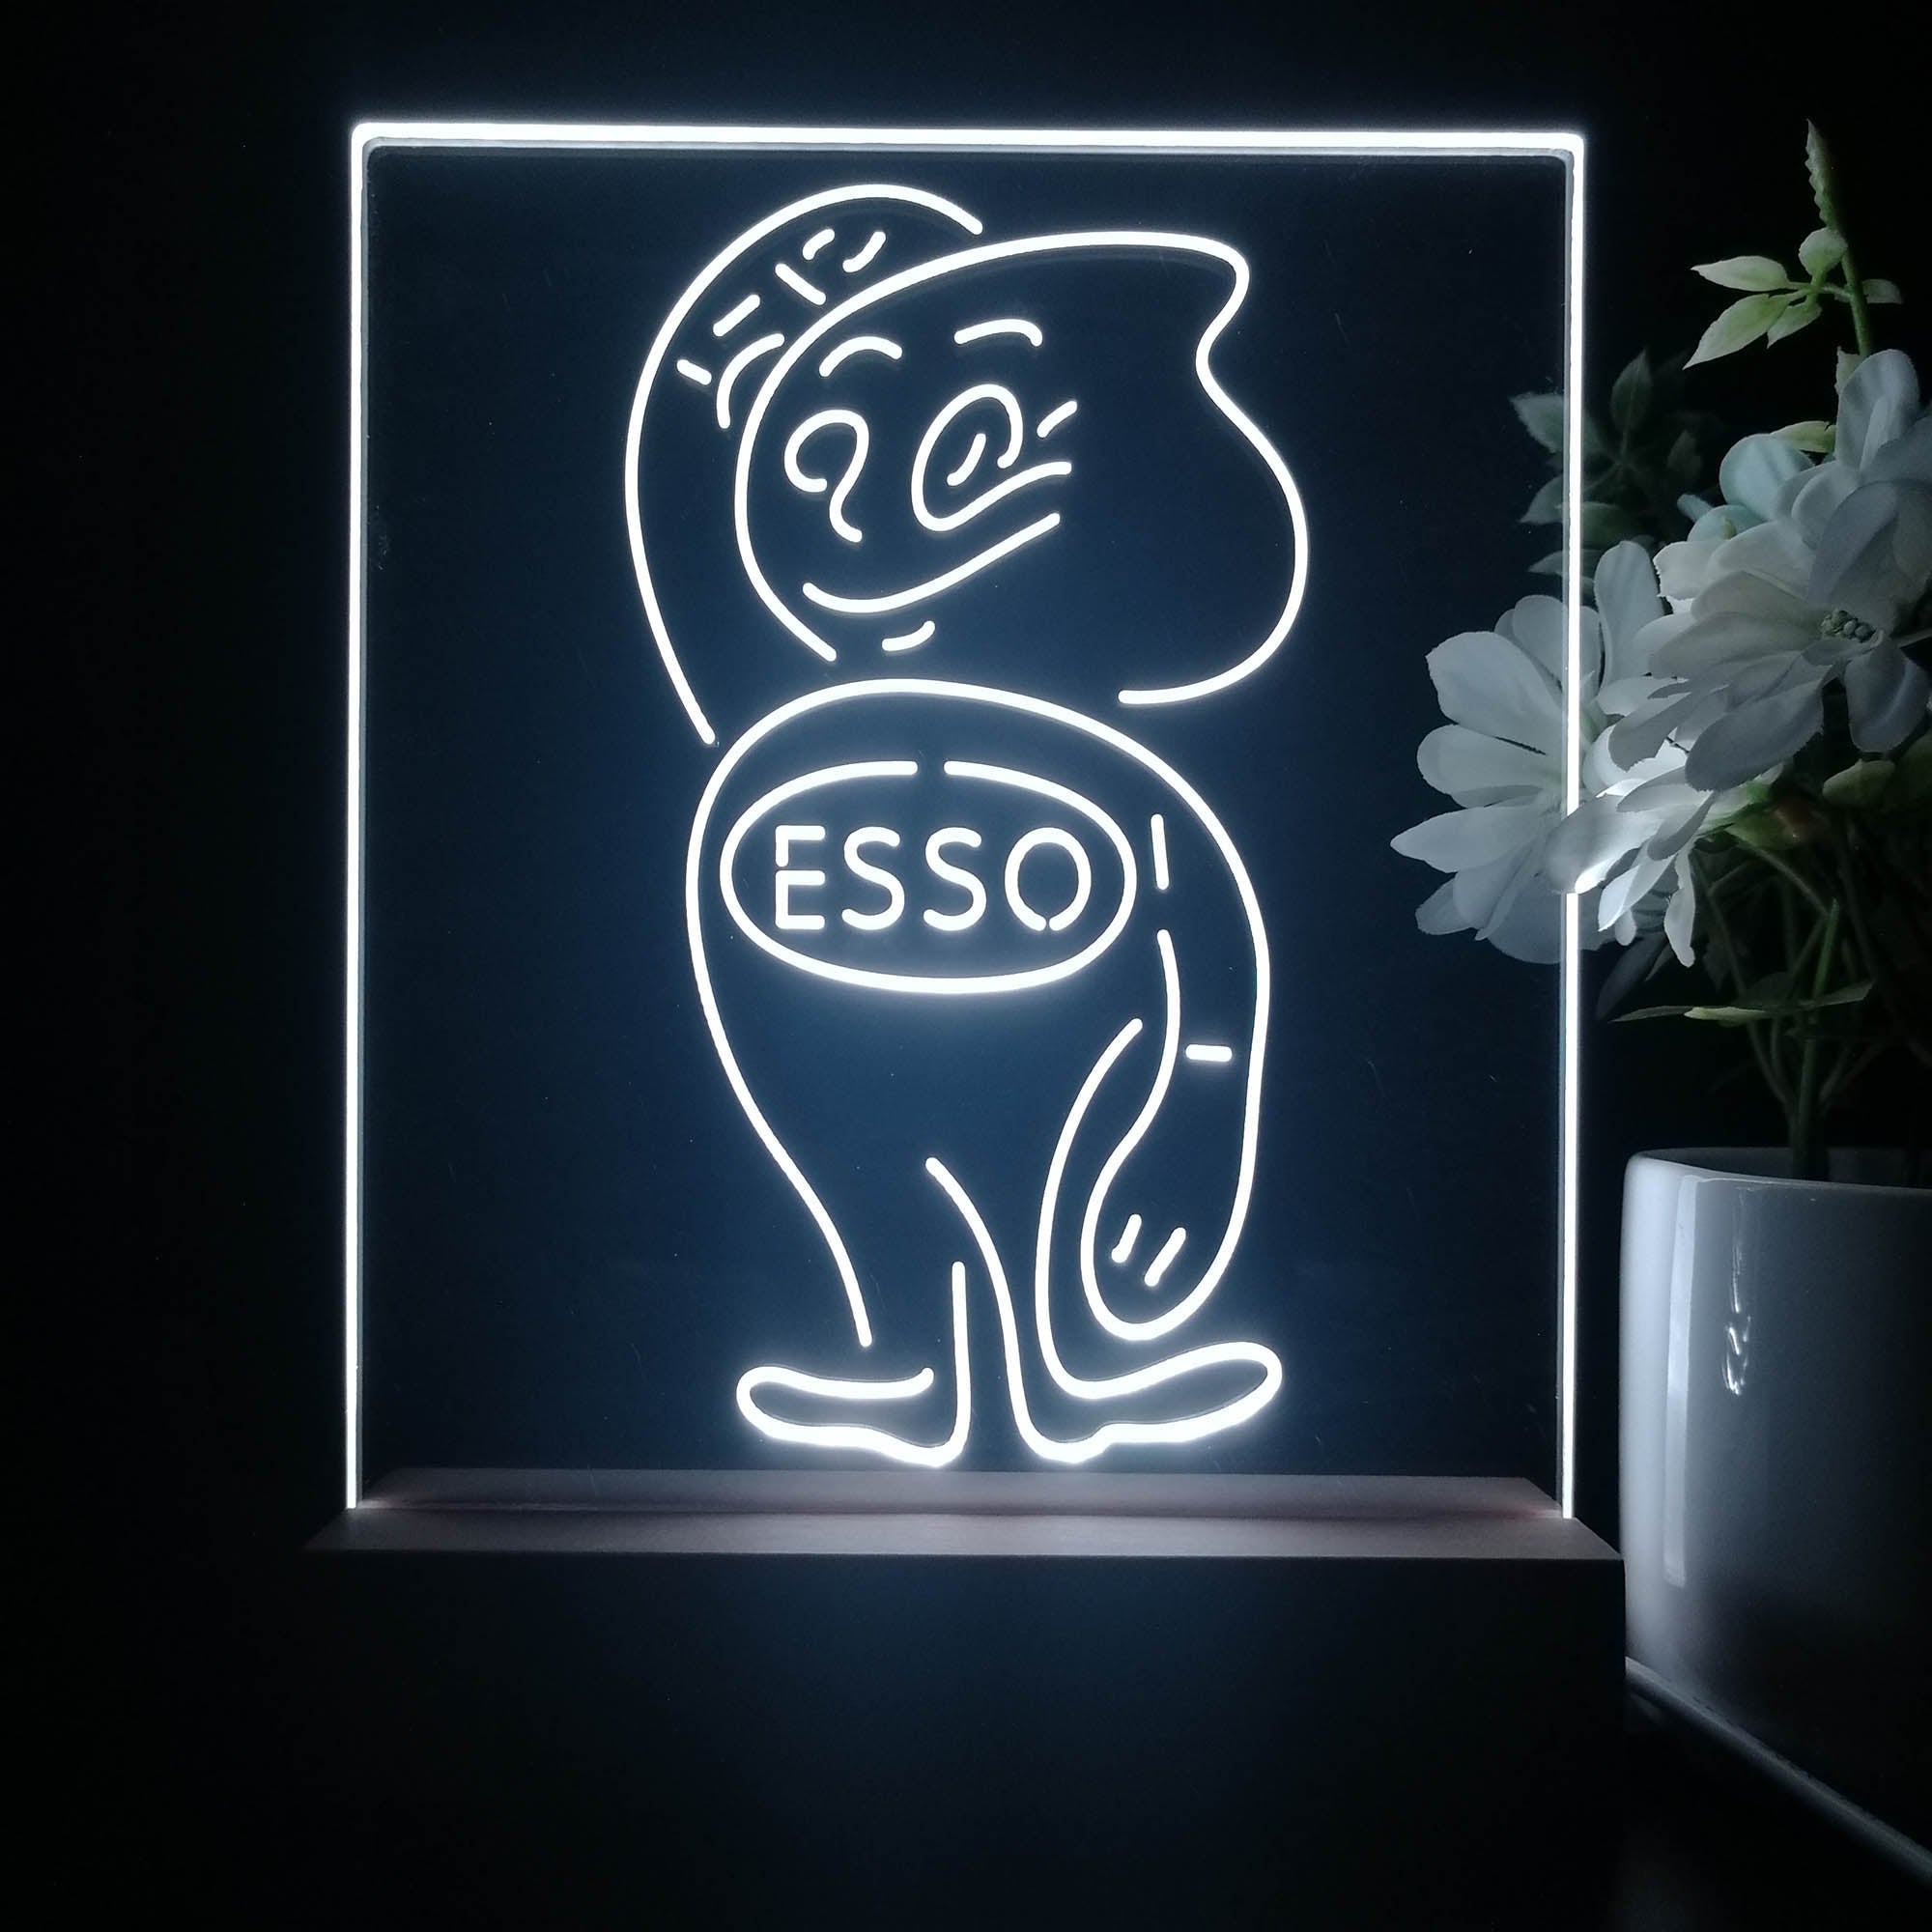 Esso Mascot Oil Gasoline 3D Illusion Night Light Desk Lamp